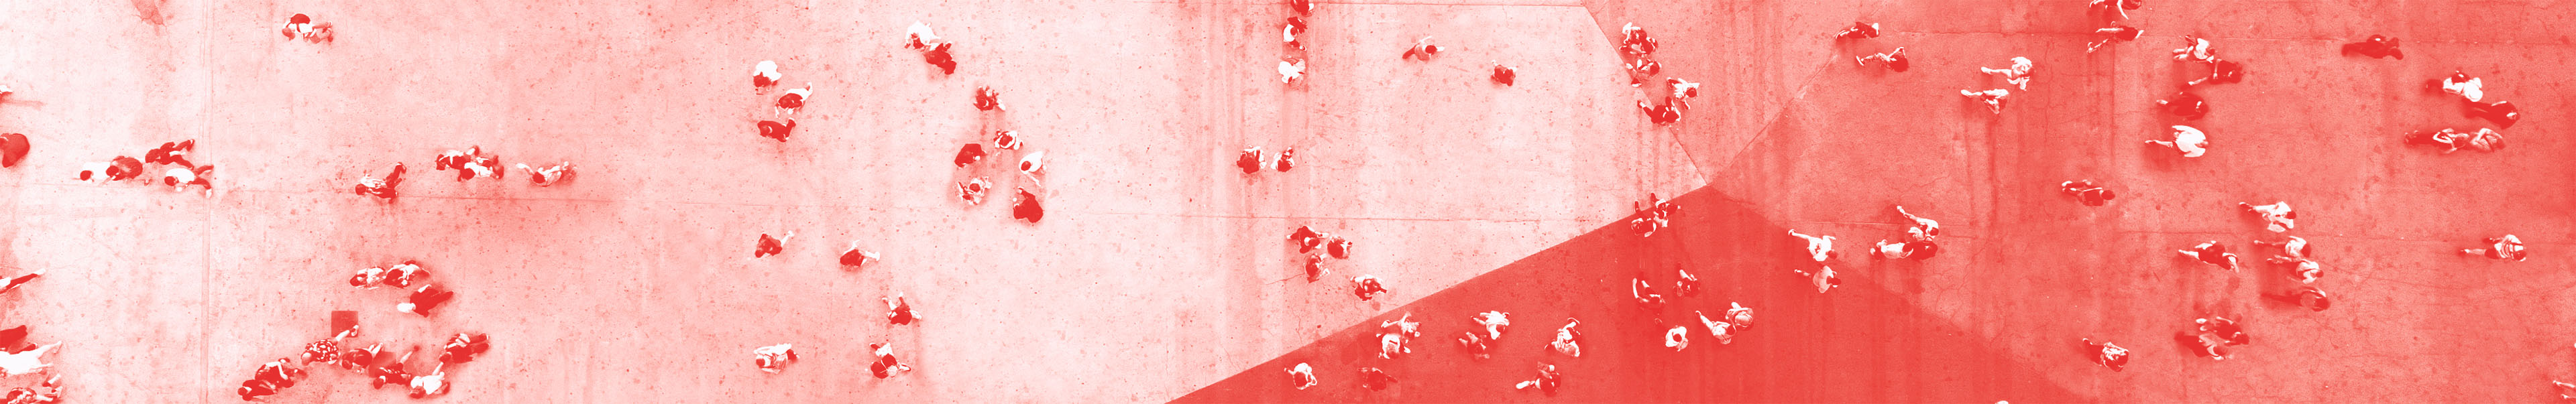 Fugleperspektiv av mennesker vandrende på en stor flat plas, med rødt fargefilter over